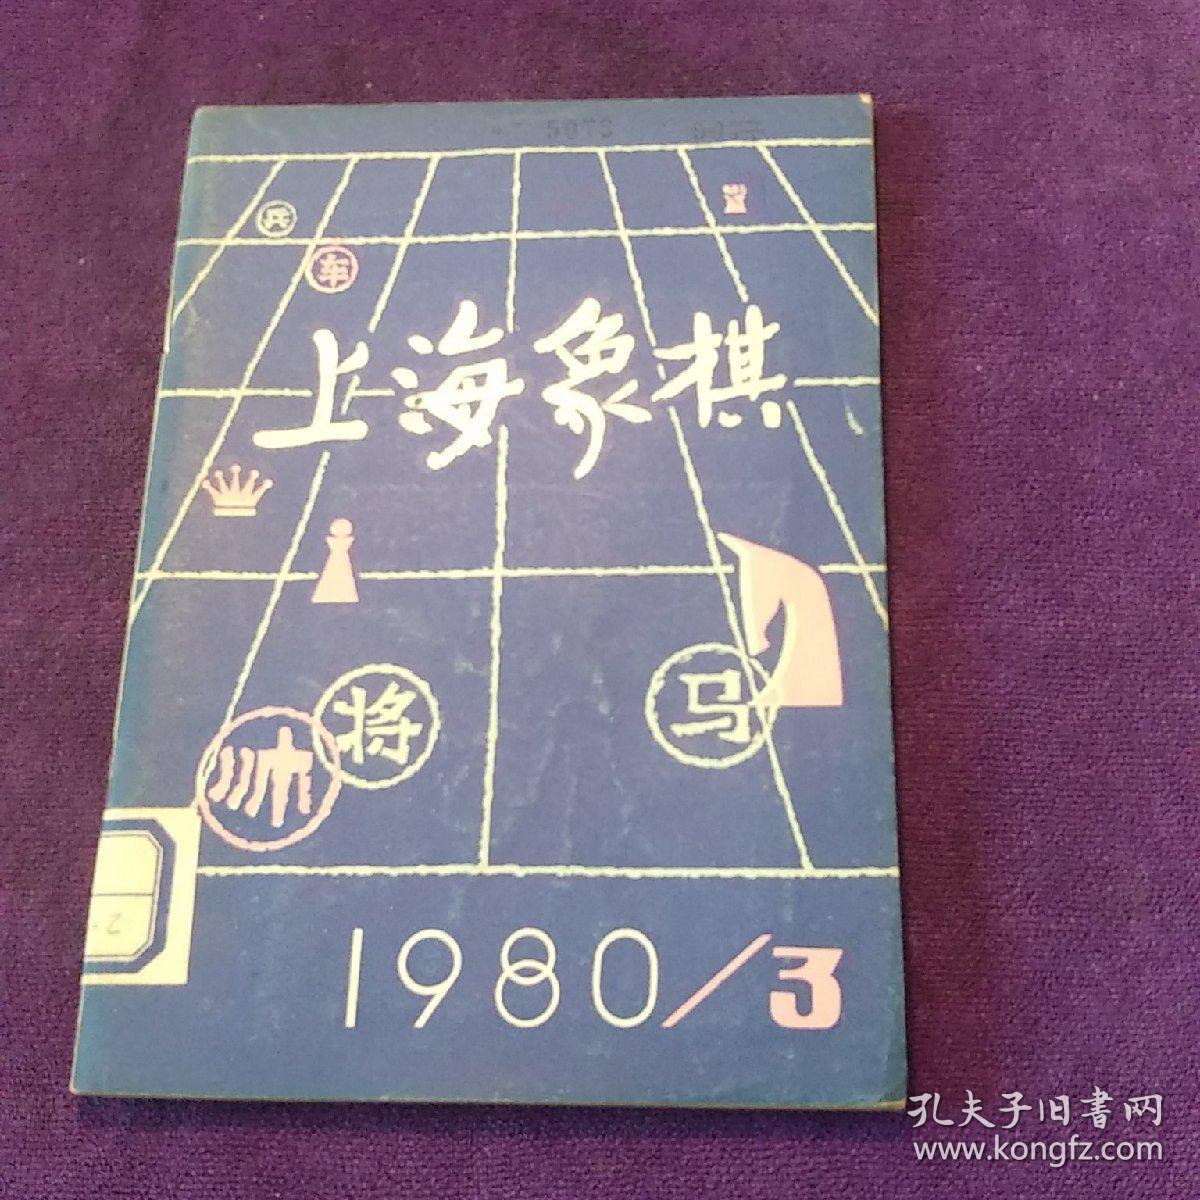 上海象棋 1980/3